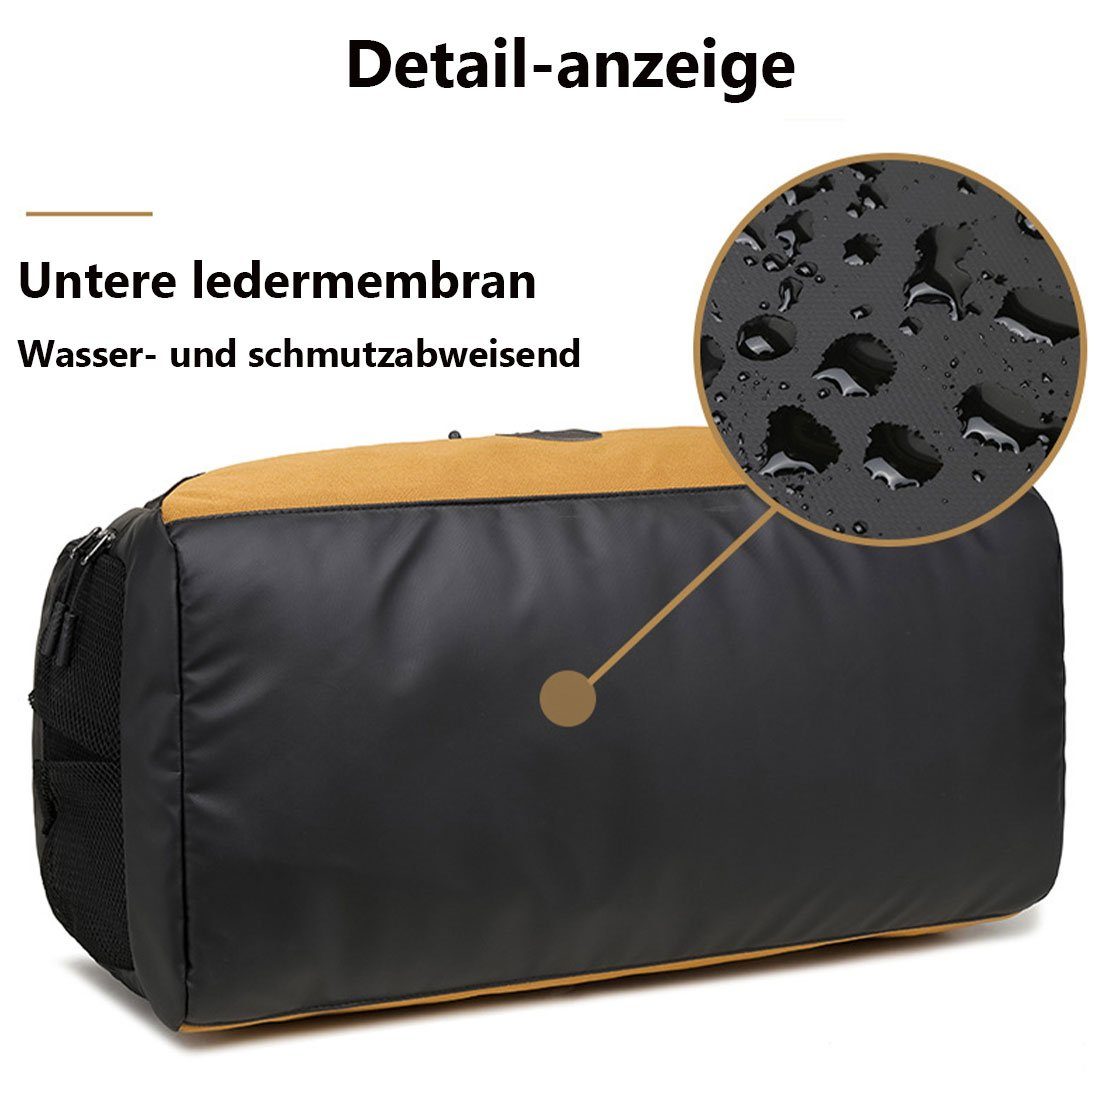 großem Nass- Fassungsvermögen mit DÖRÖY Sporttasche Seesack Trockensporttasche, Grün und